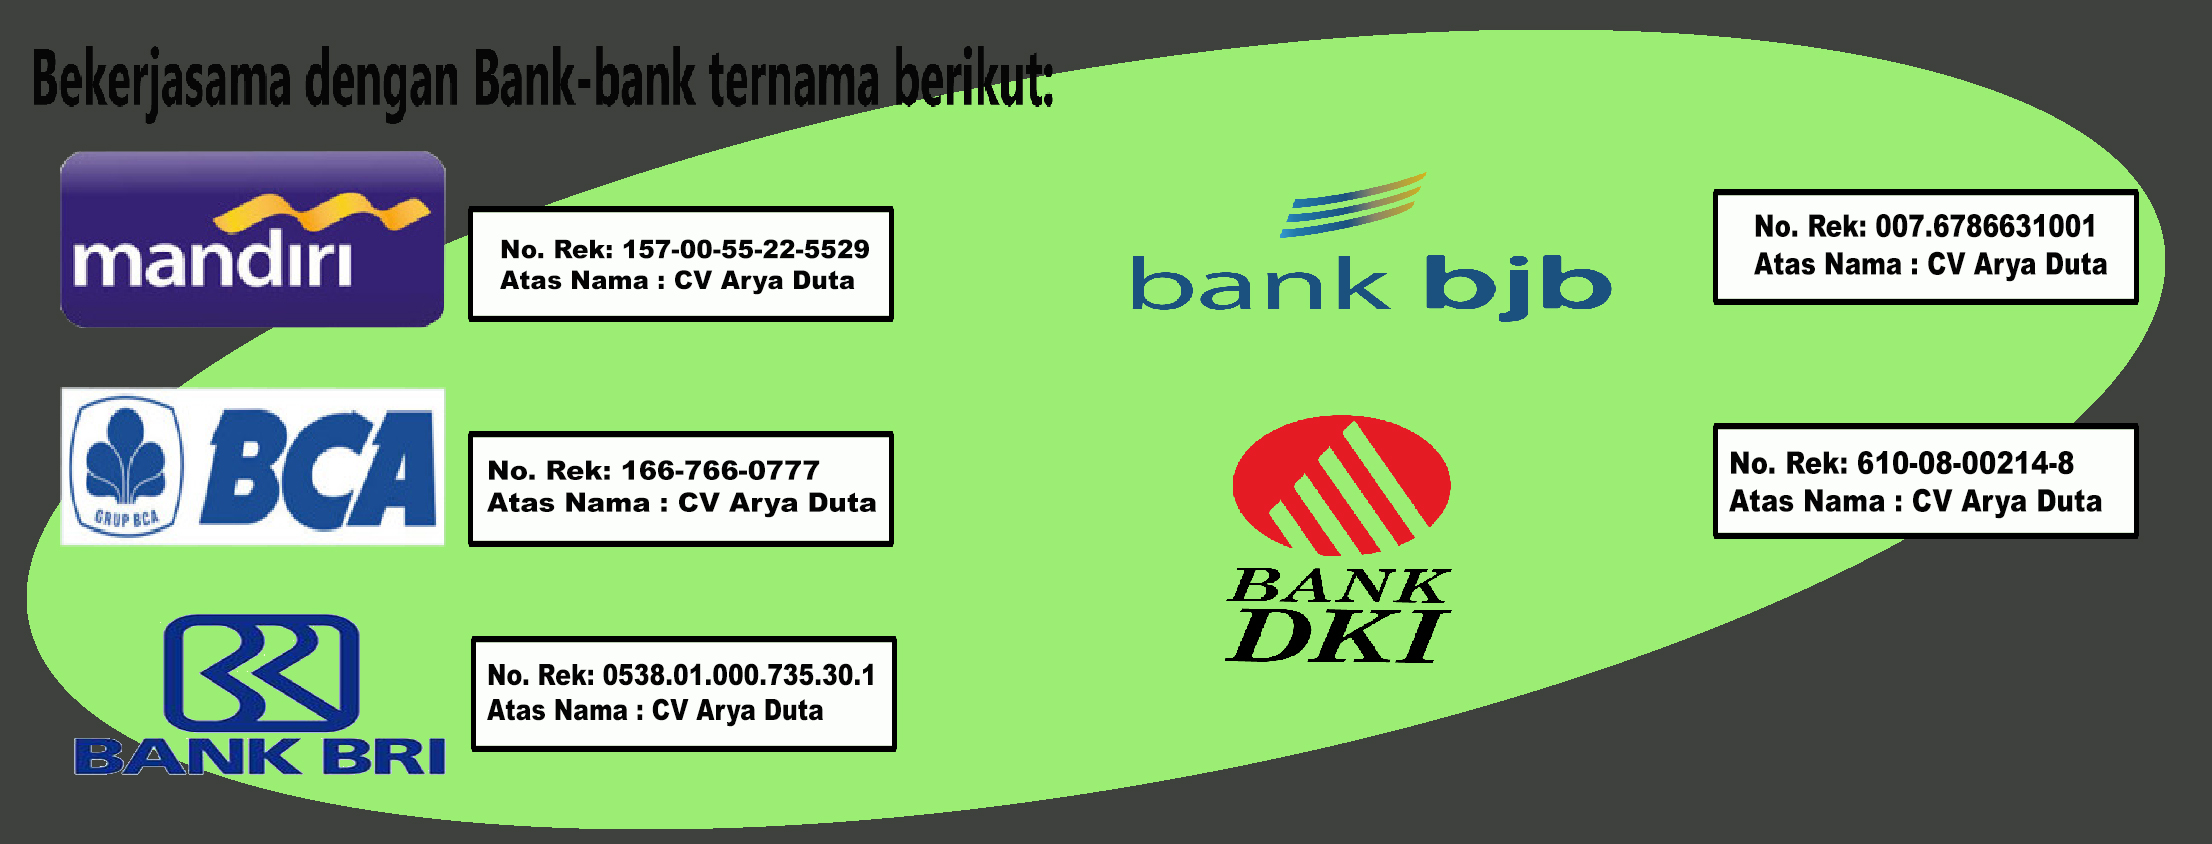 Rekening Bank Arya Duta 